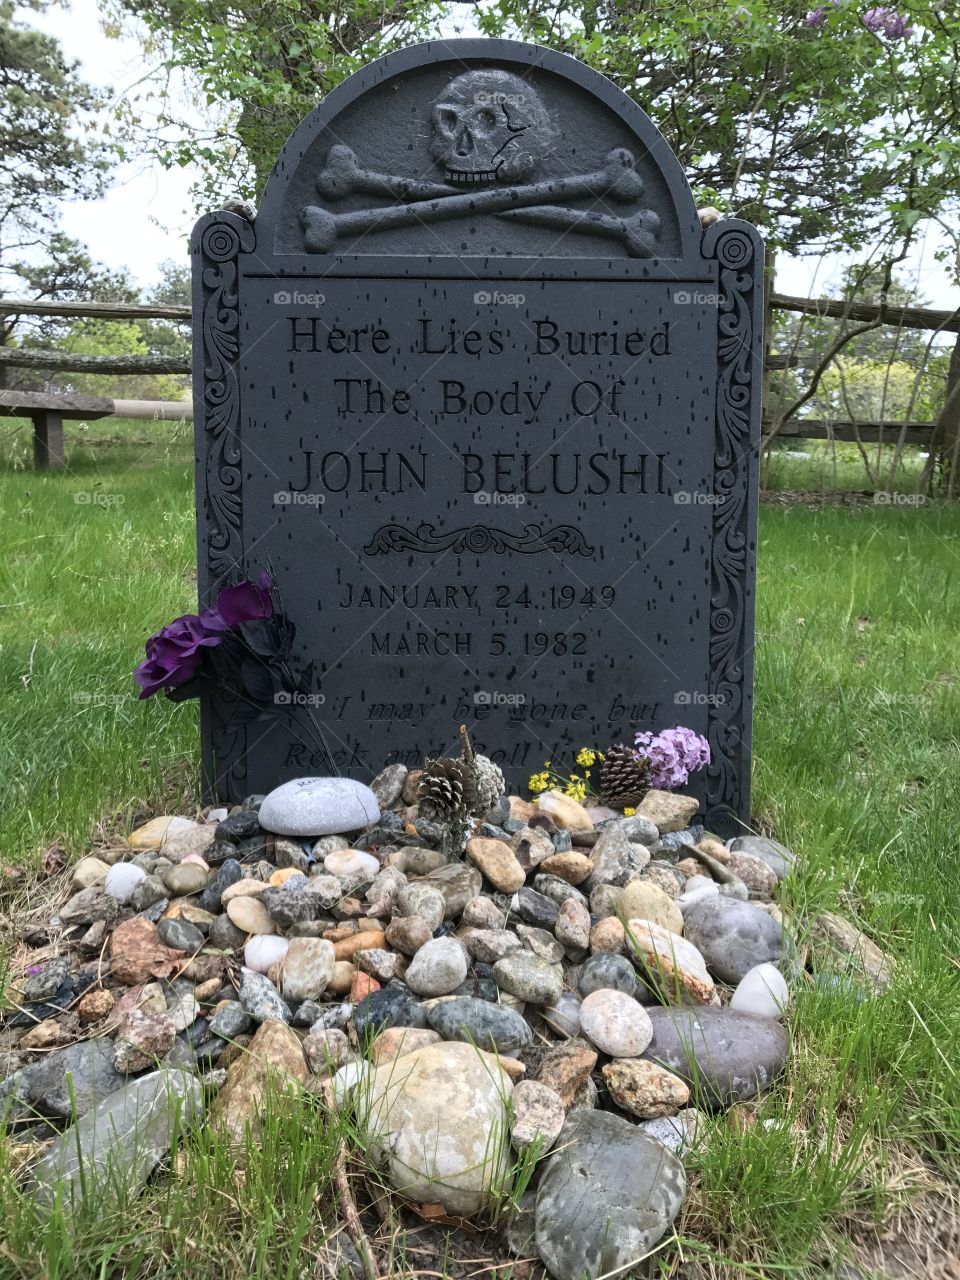 Rip John Belushi 